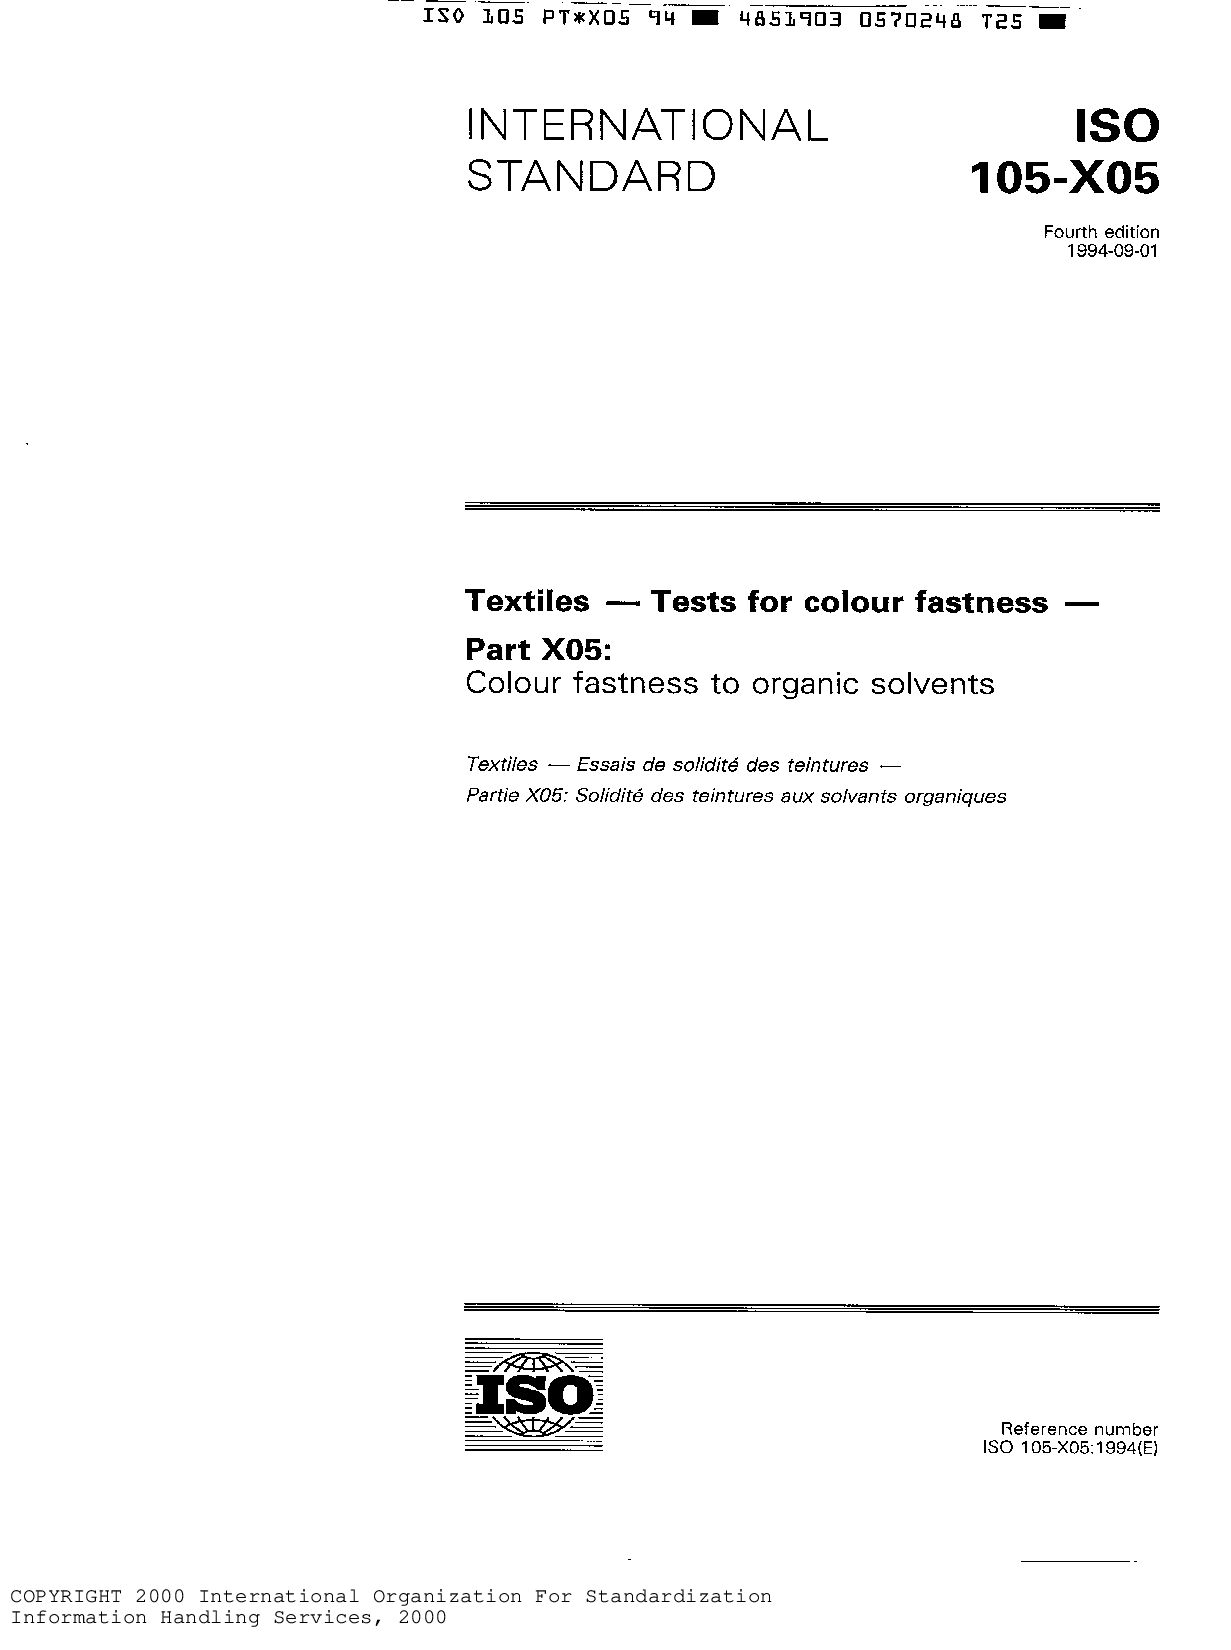 ISO 105-X05:1994封面图